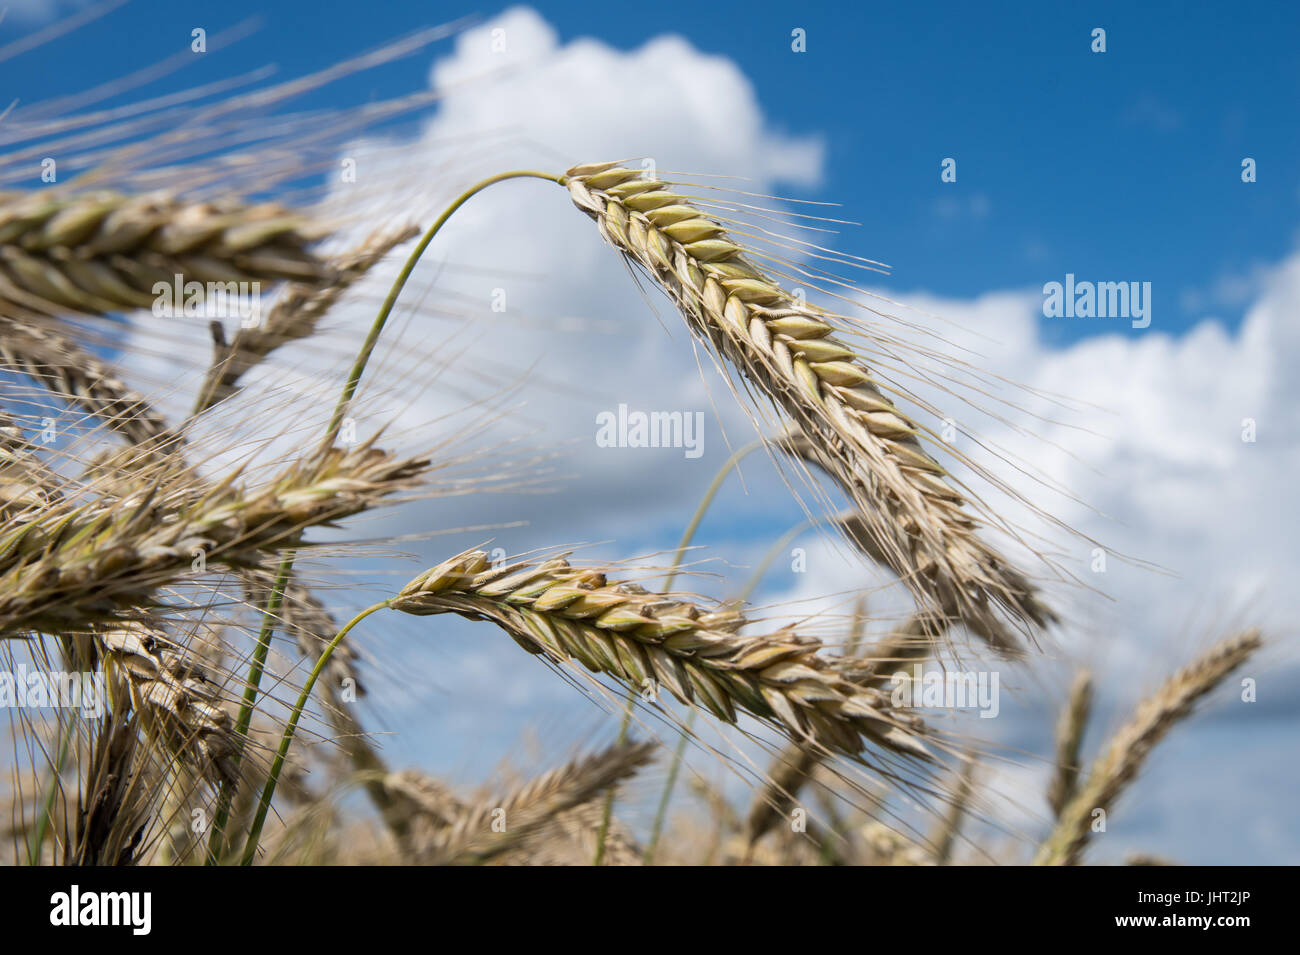 Harpstedt, Allemagne. 15 juillet, 2017. Les épis de blé presque mûr peut être vu sur un champ près de Harpstedt, Allemagne, 15 juillet 2017. Blanc-bleu ciel est visible au-dessus du champ de blé. Photo : Ingo Wagner/dpa/Alamy Live News Banque D'Images